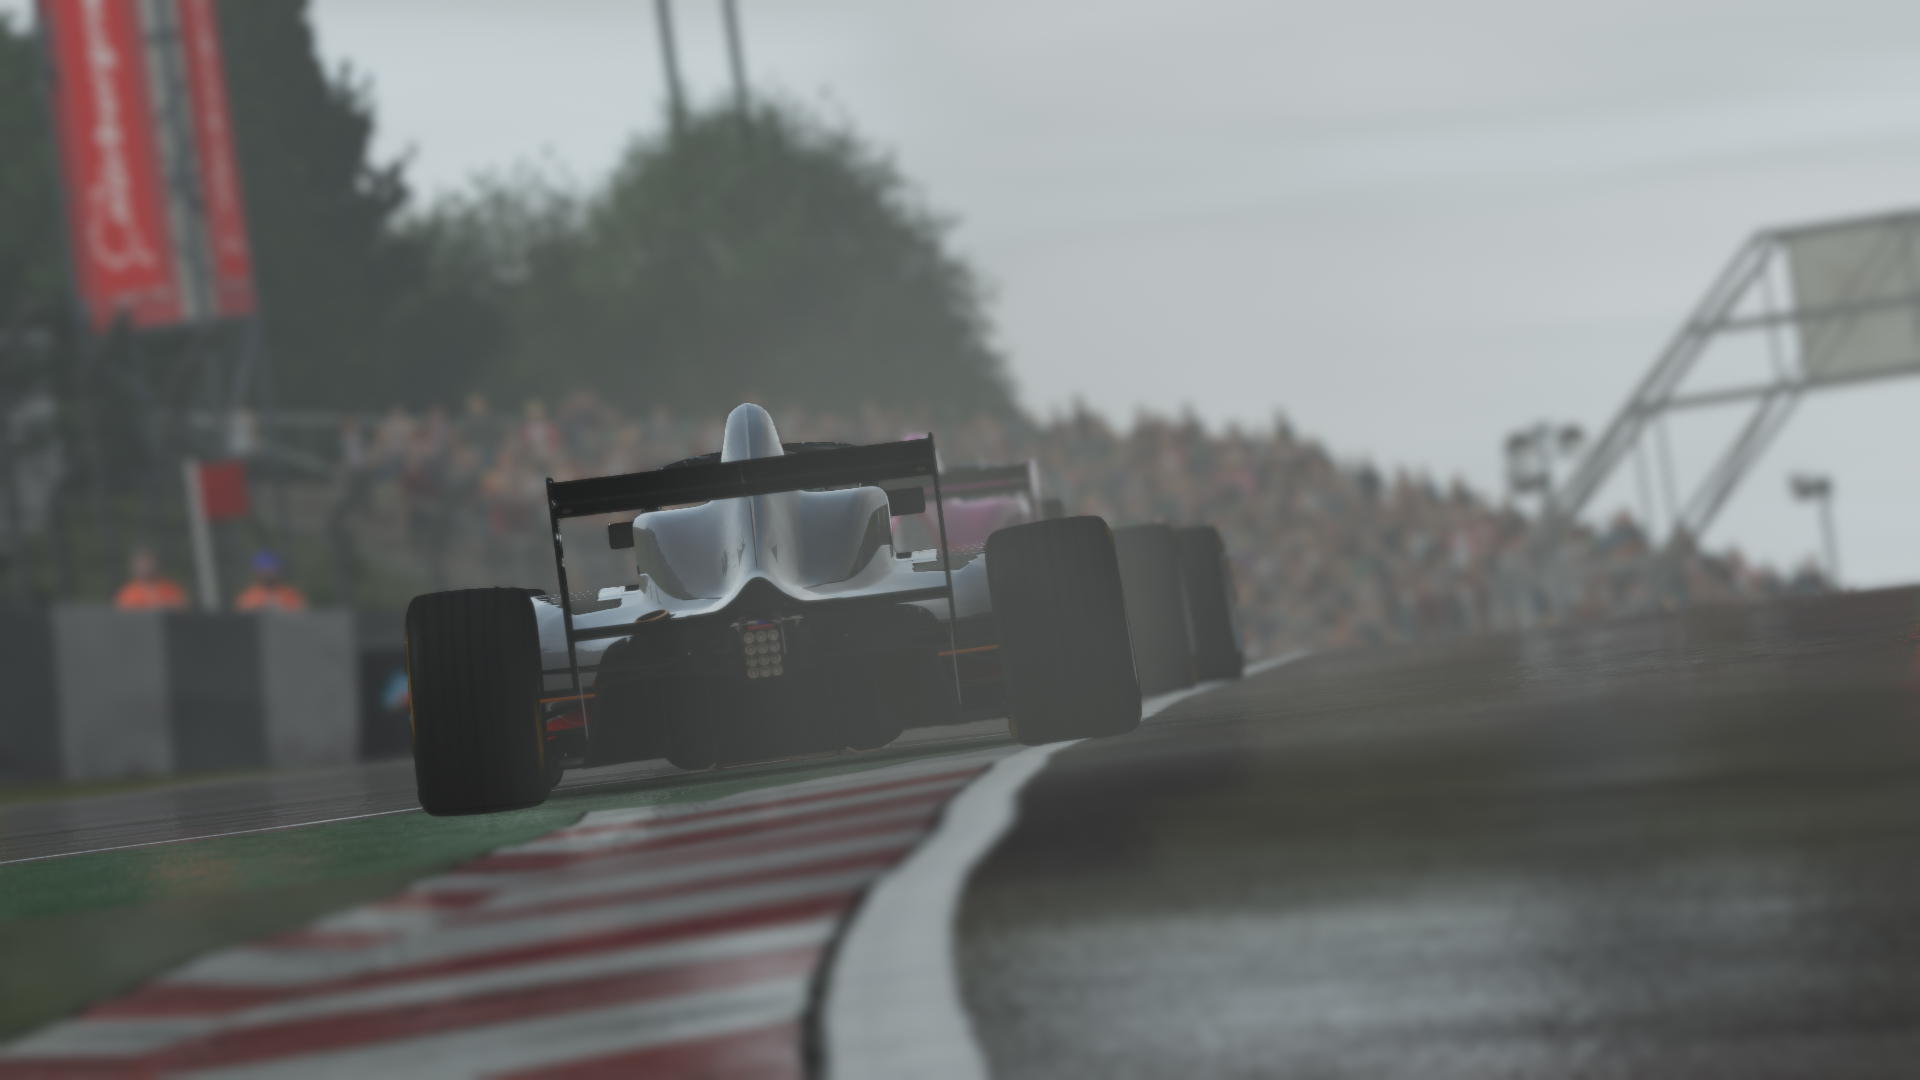 Monaco Grand Prix Trophy - Digital 3D : r/formula1